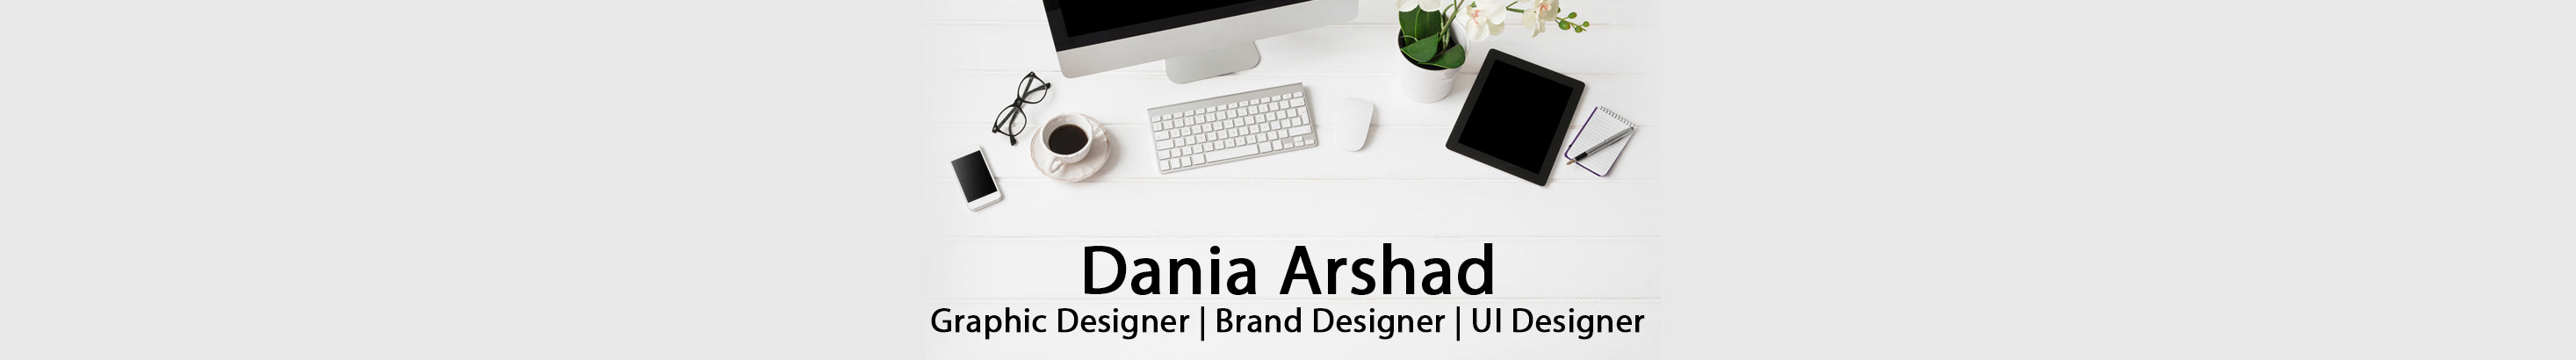 Dania Arshad profil başlığı